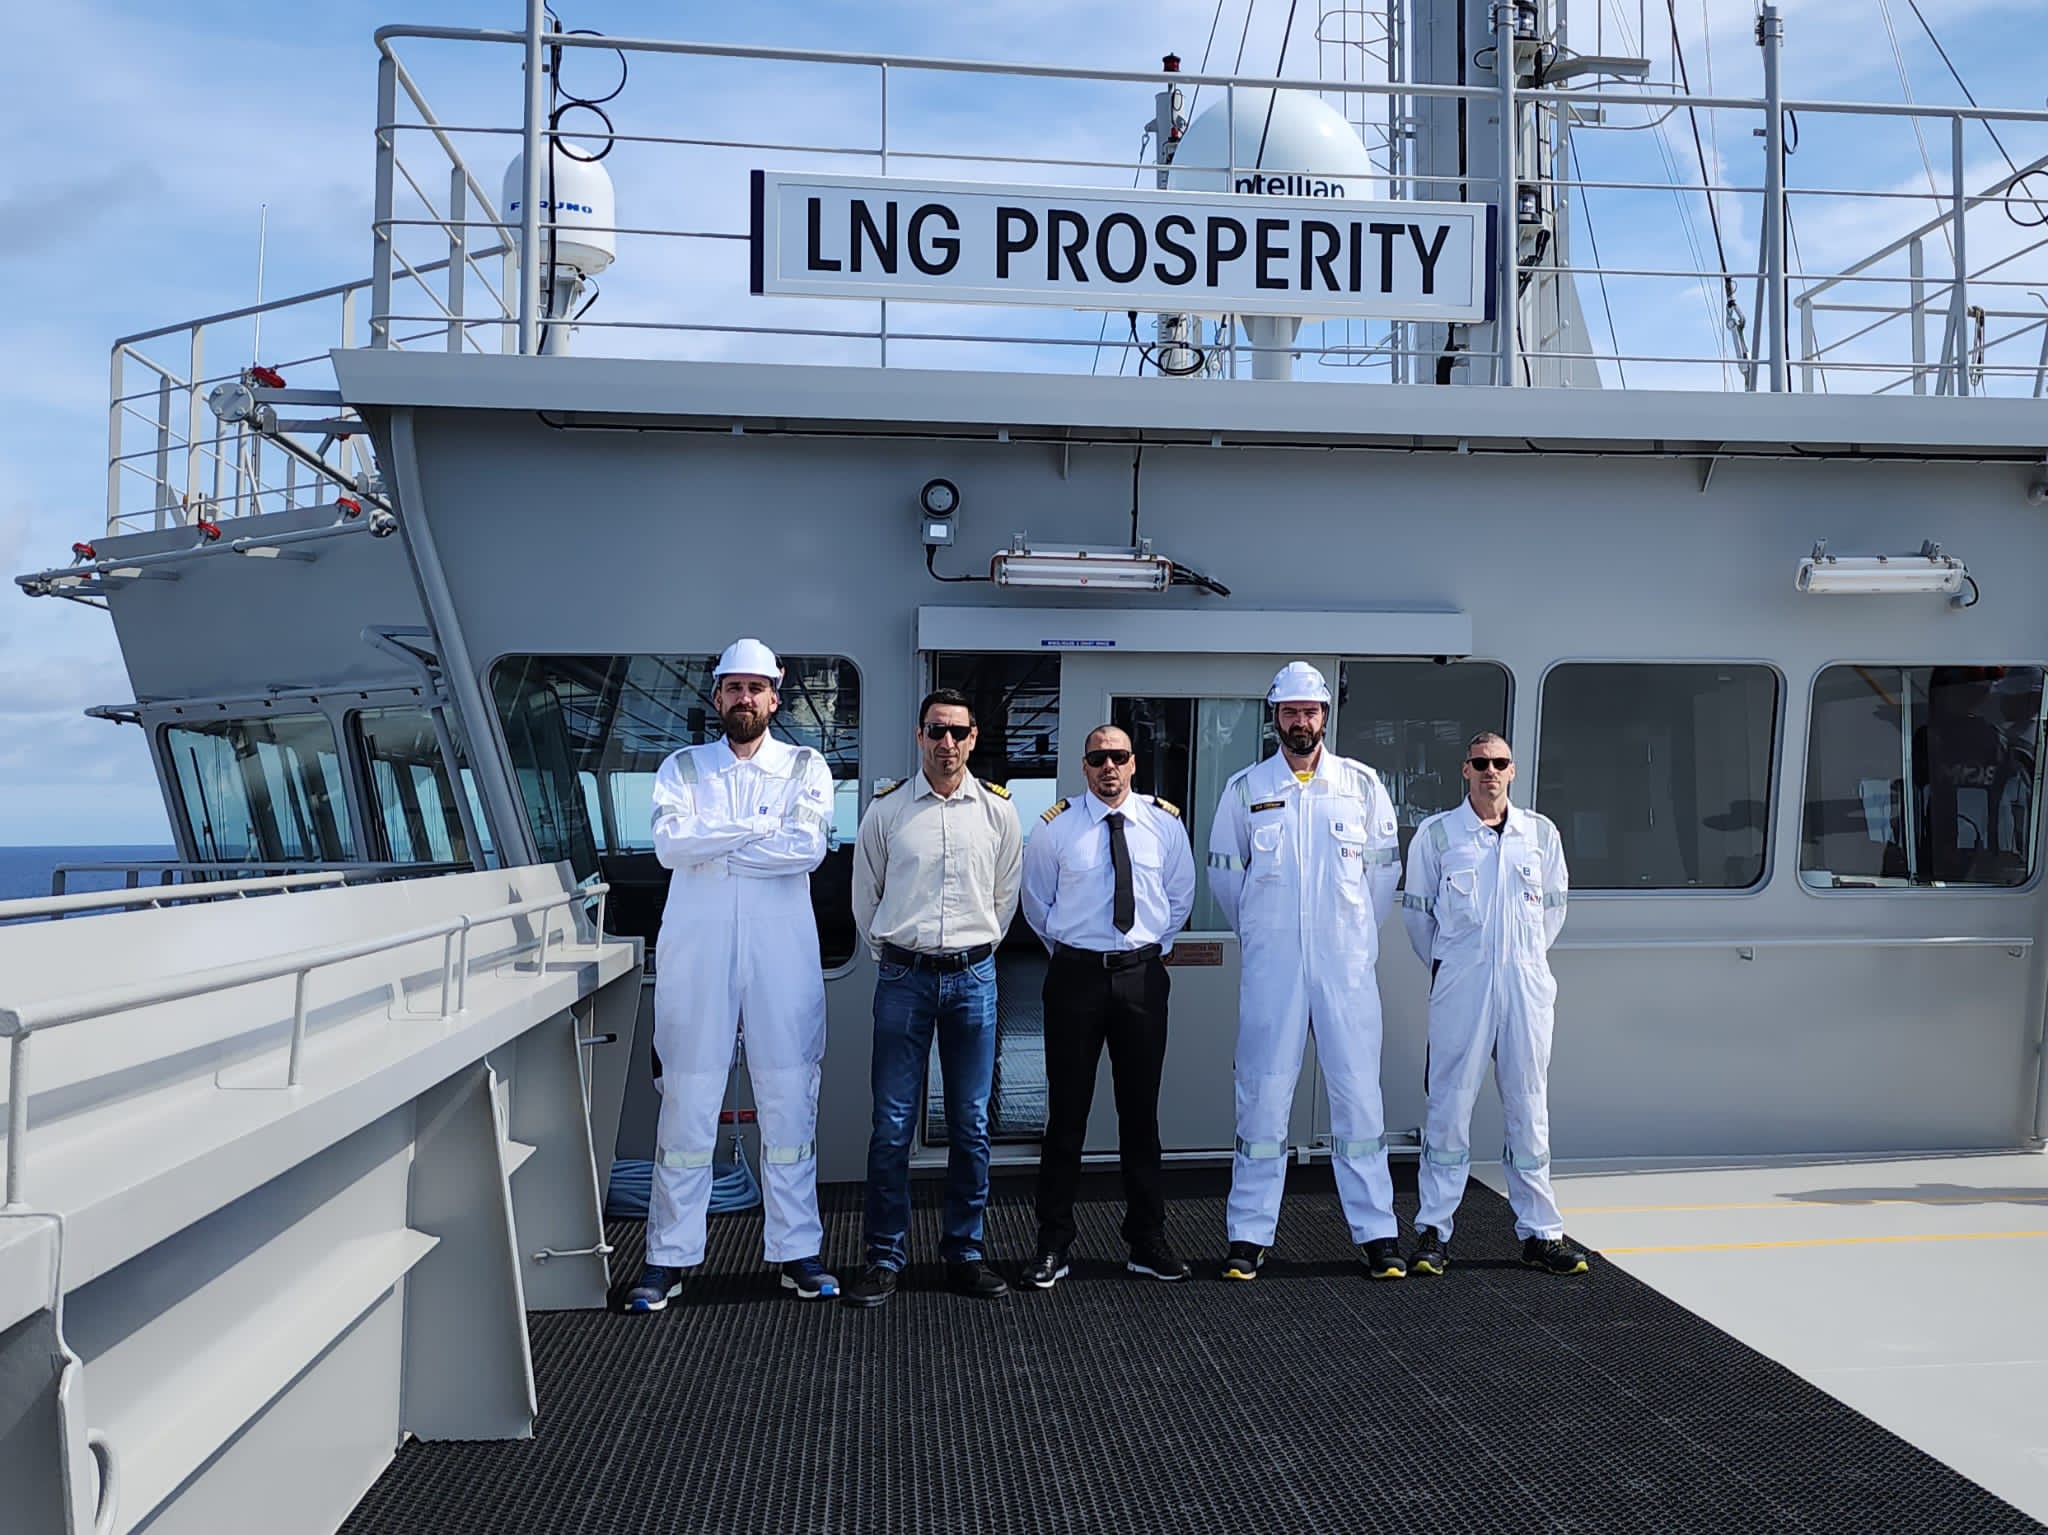 Foto privatna arhiva Ivan Vlašimsky, brod LNG Prosperity